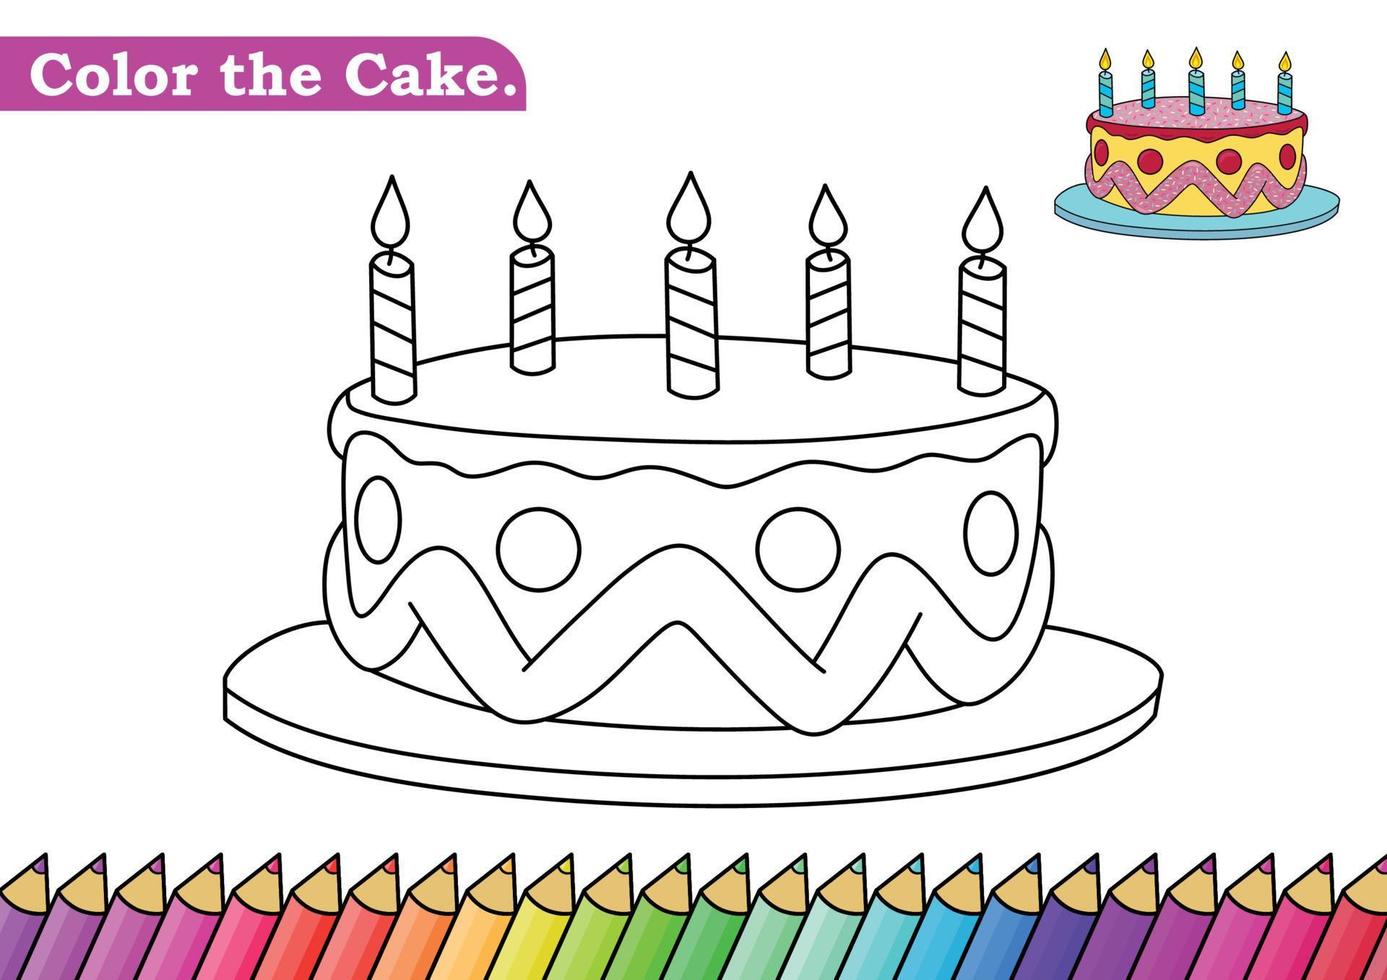 Desenho da página de colorir do menino dos desenhos animados com doces.  Livro para colorir para crianças imagem vetorial de Oleon17© 136834062